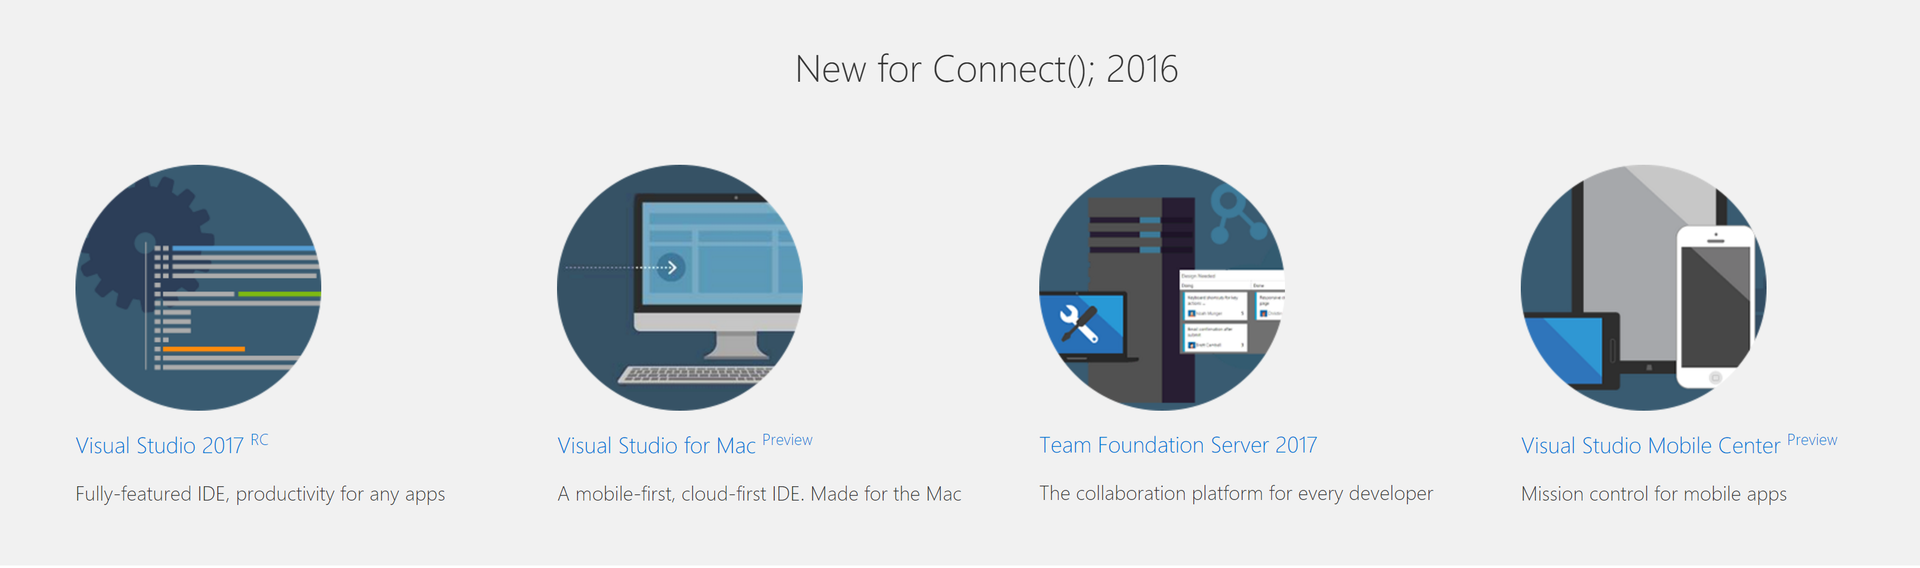 Visual Studio для Mac и другие новости конференции Connect(); --2016 - 1